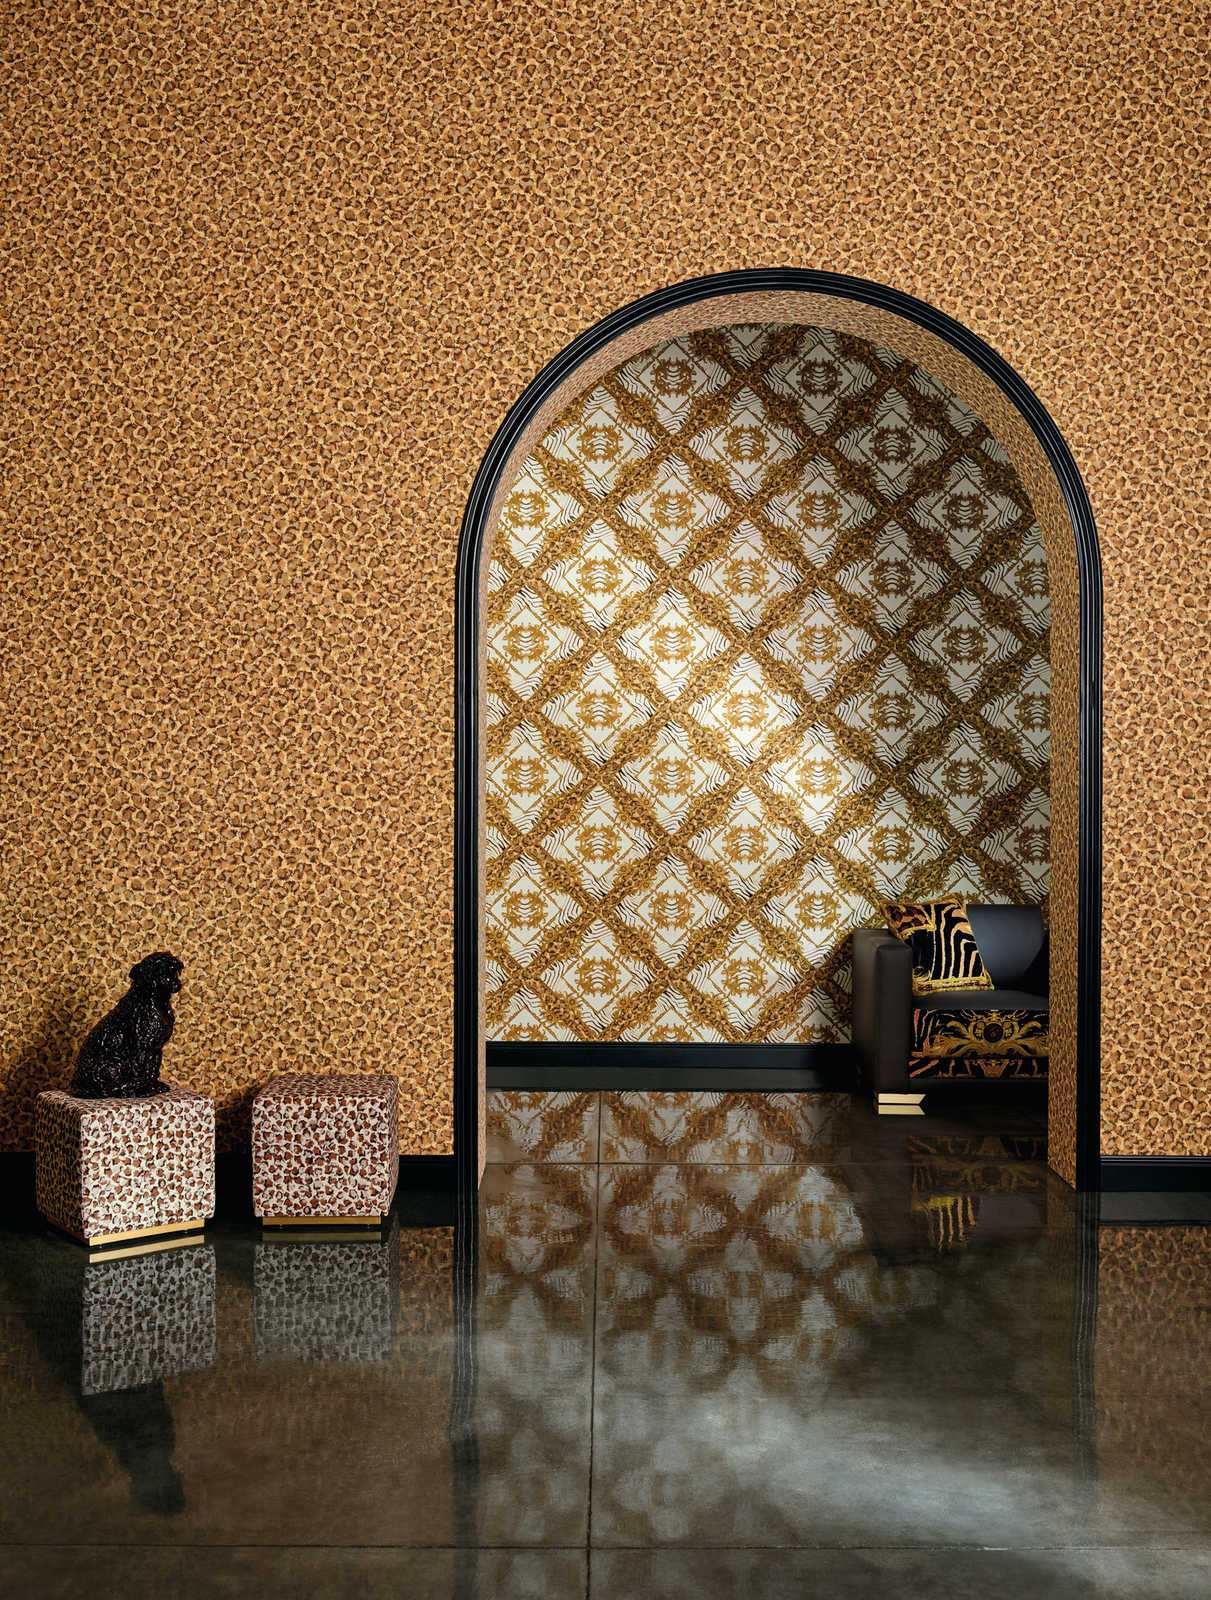             Behang met stippenpatroon in ethno stijl - bruin, metallic
        